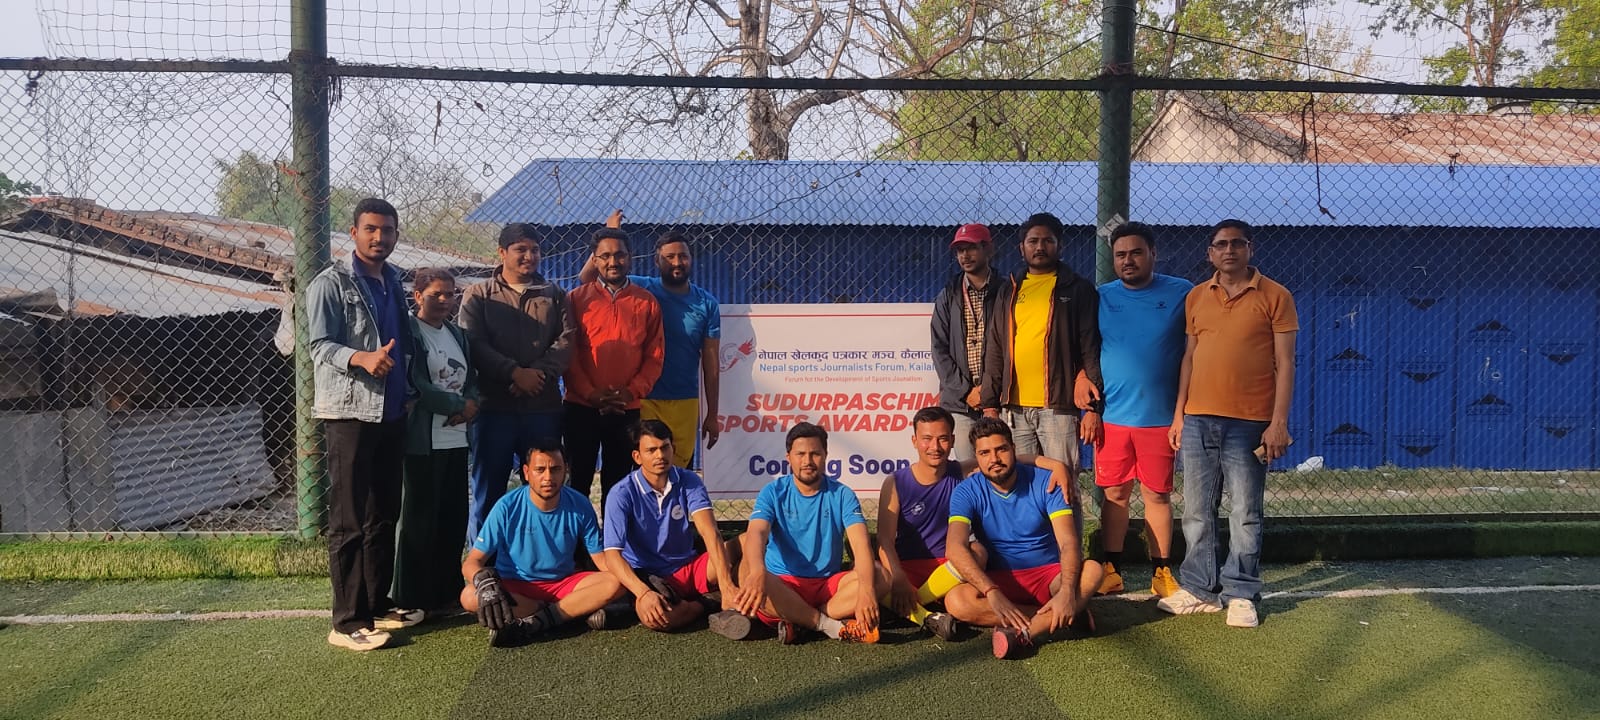 ॐ श्रीनगर डेन्टल क्लिनिक प्रथम फुटसल प्रतियोगिता सुरु